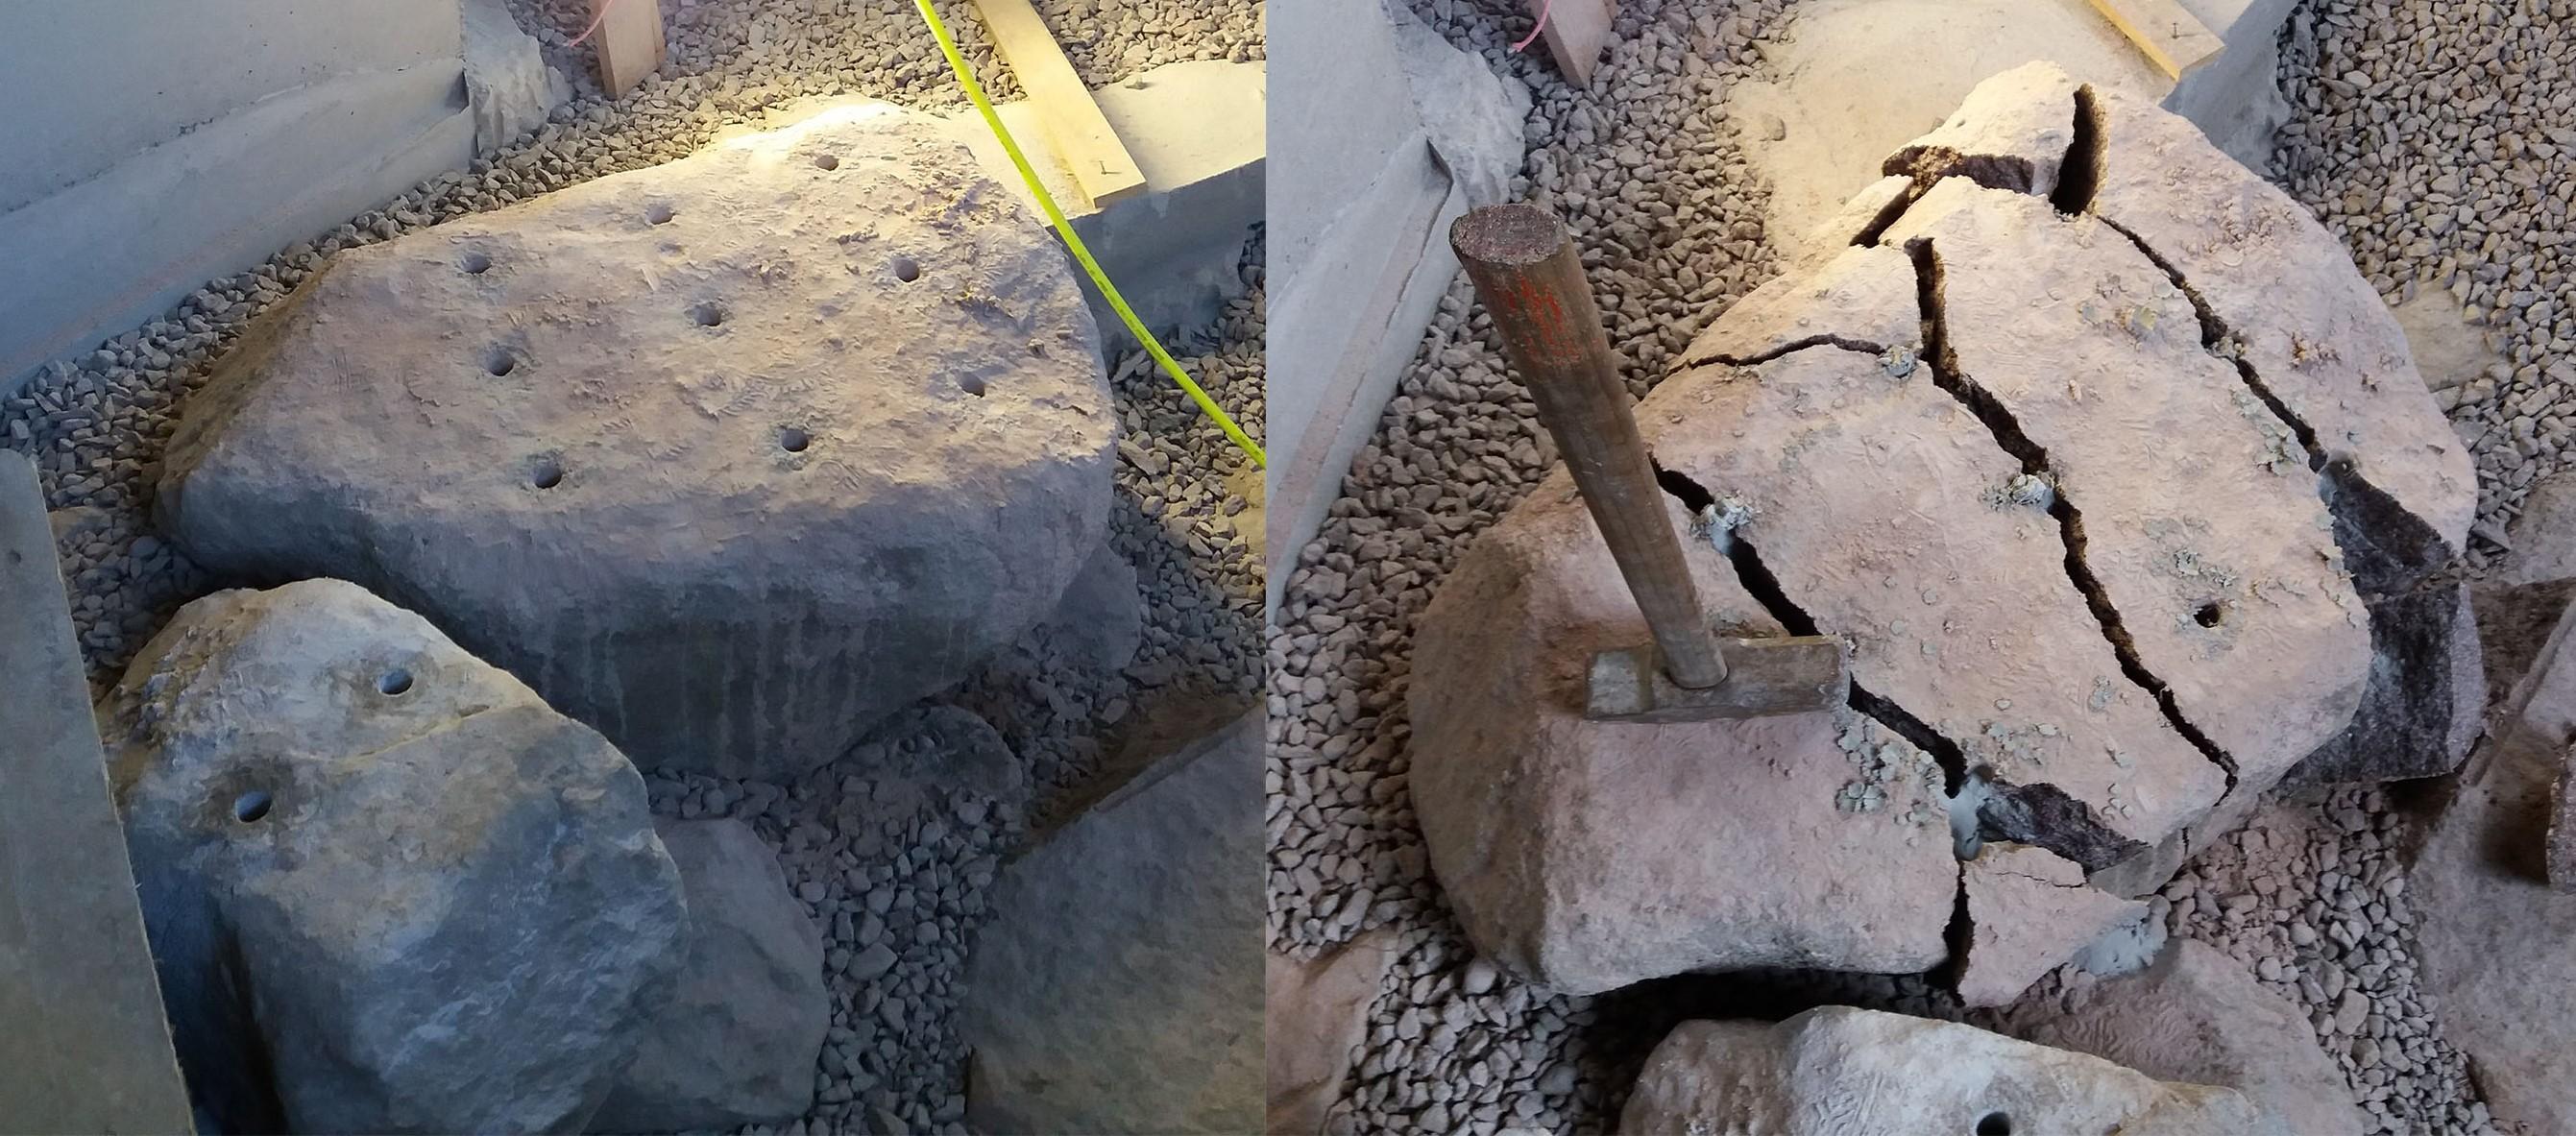 Reikien poraaminen kannattaa suunnitella niin, että kivi murtuu tarpeeksi pieniksi lohkareiksi, jolloin niiden poisvienti on helpompaa.